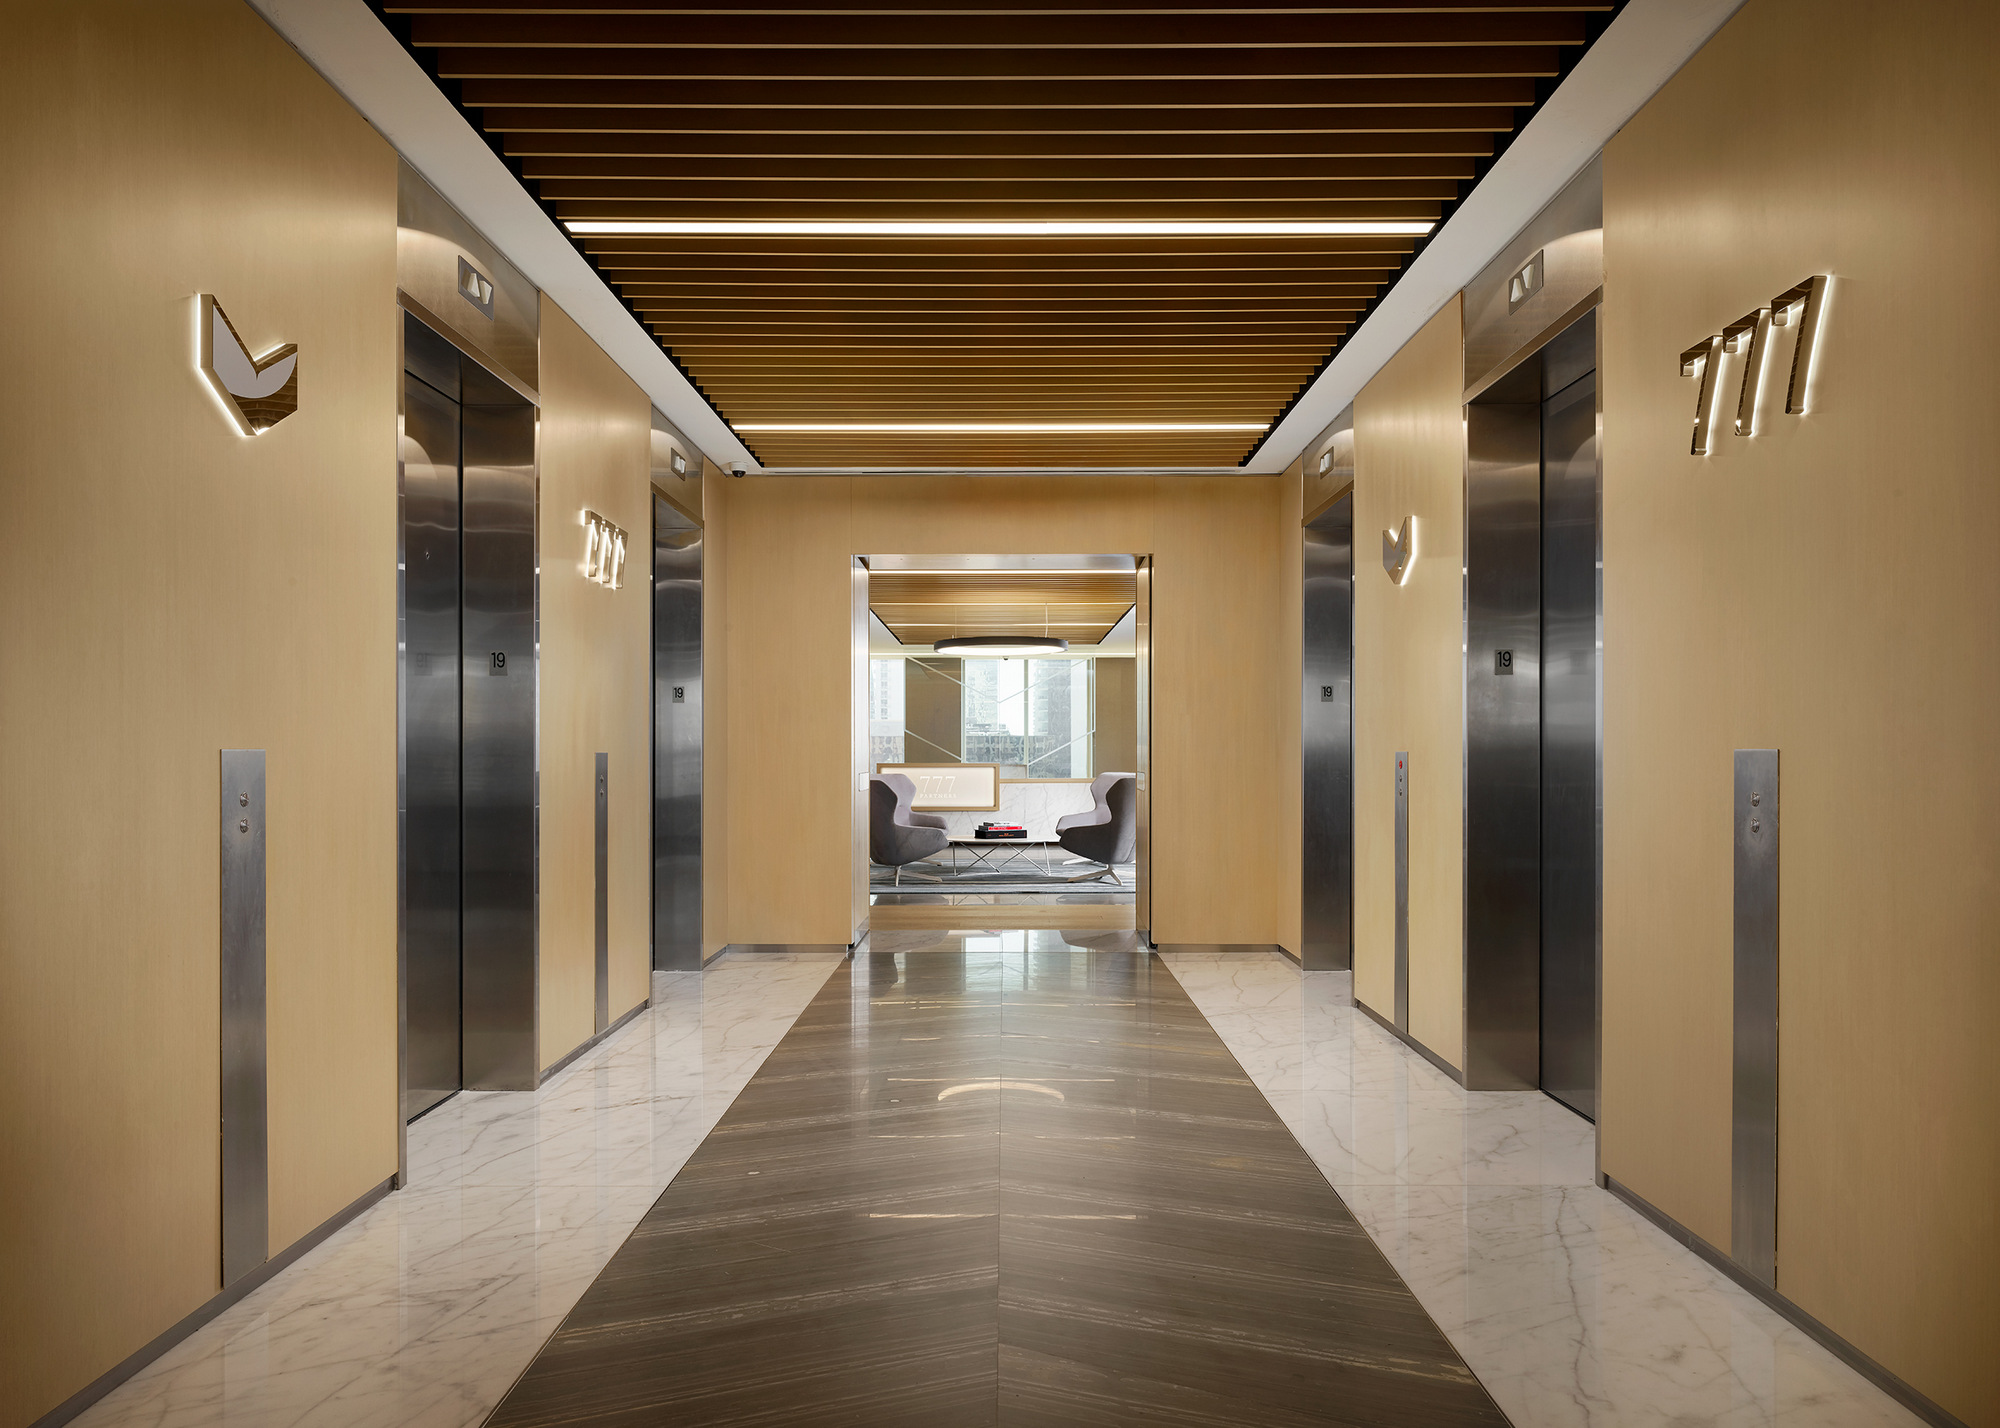 777合作伙伴办公室-迈阿密|ART-Arrakis | 建筑室内设计的创新与灵感